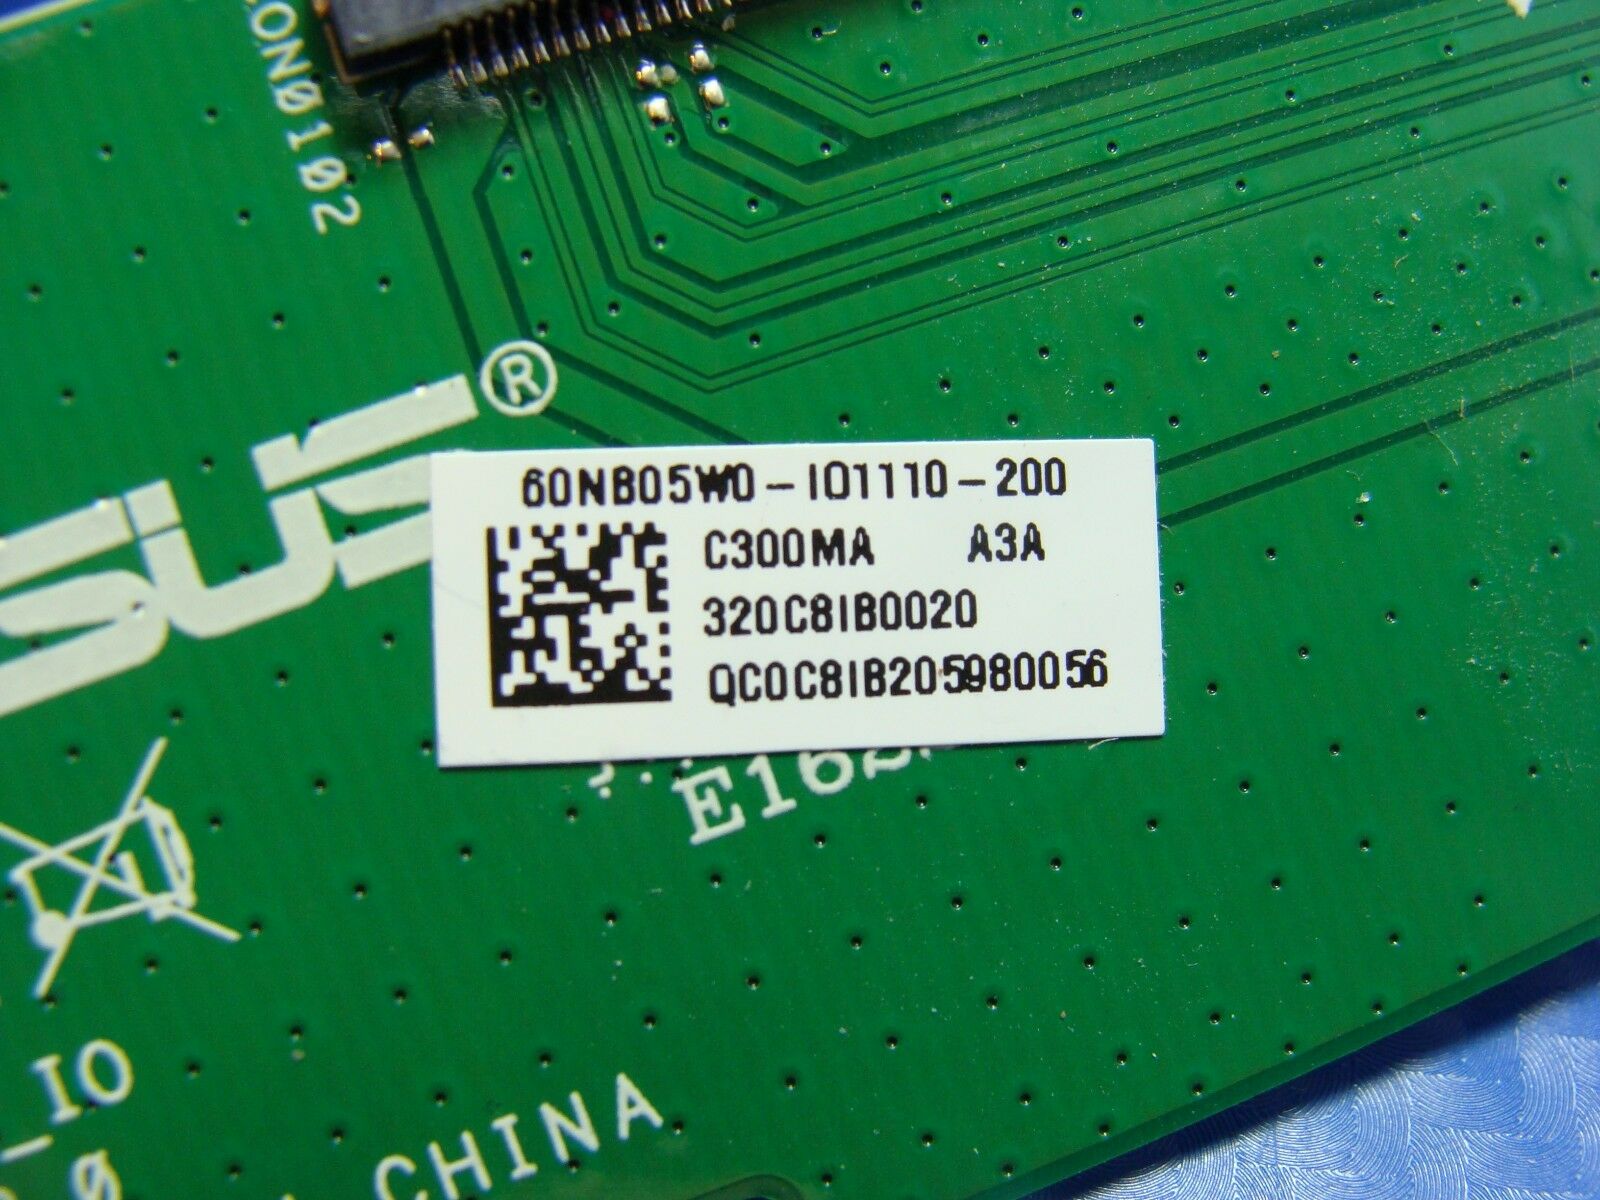 ASUS Chromebook C300M 13.3